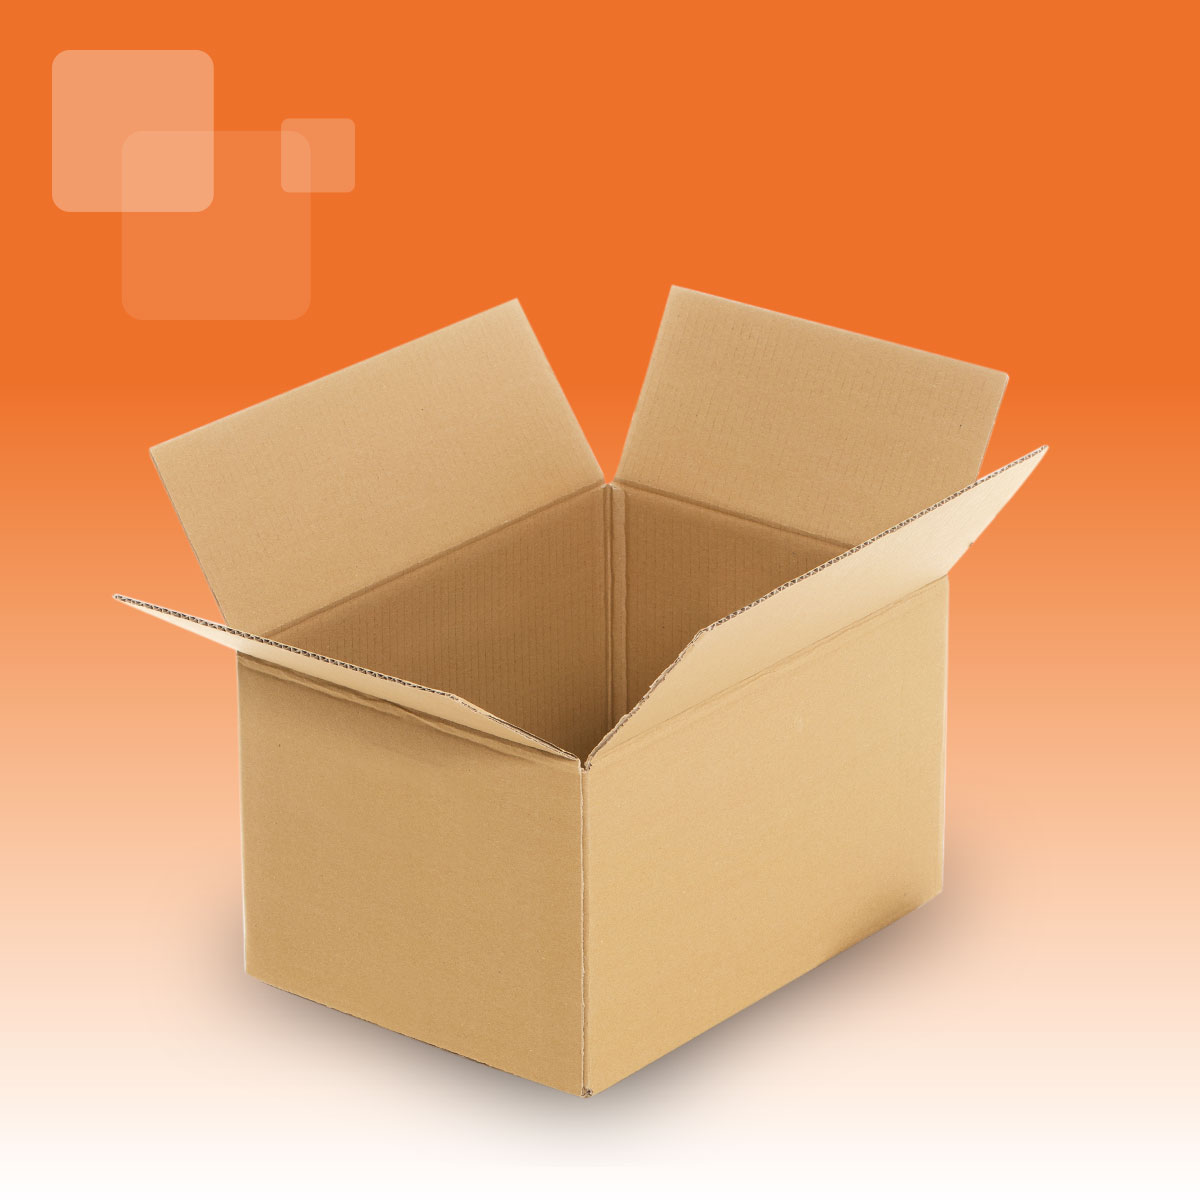 n smith cardboard packaging oldbury point of sale printed display box packing